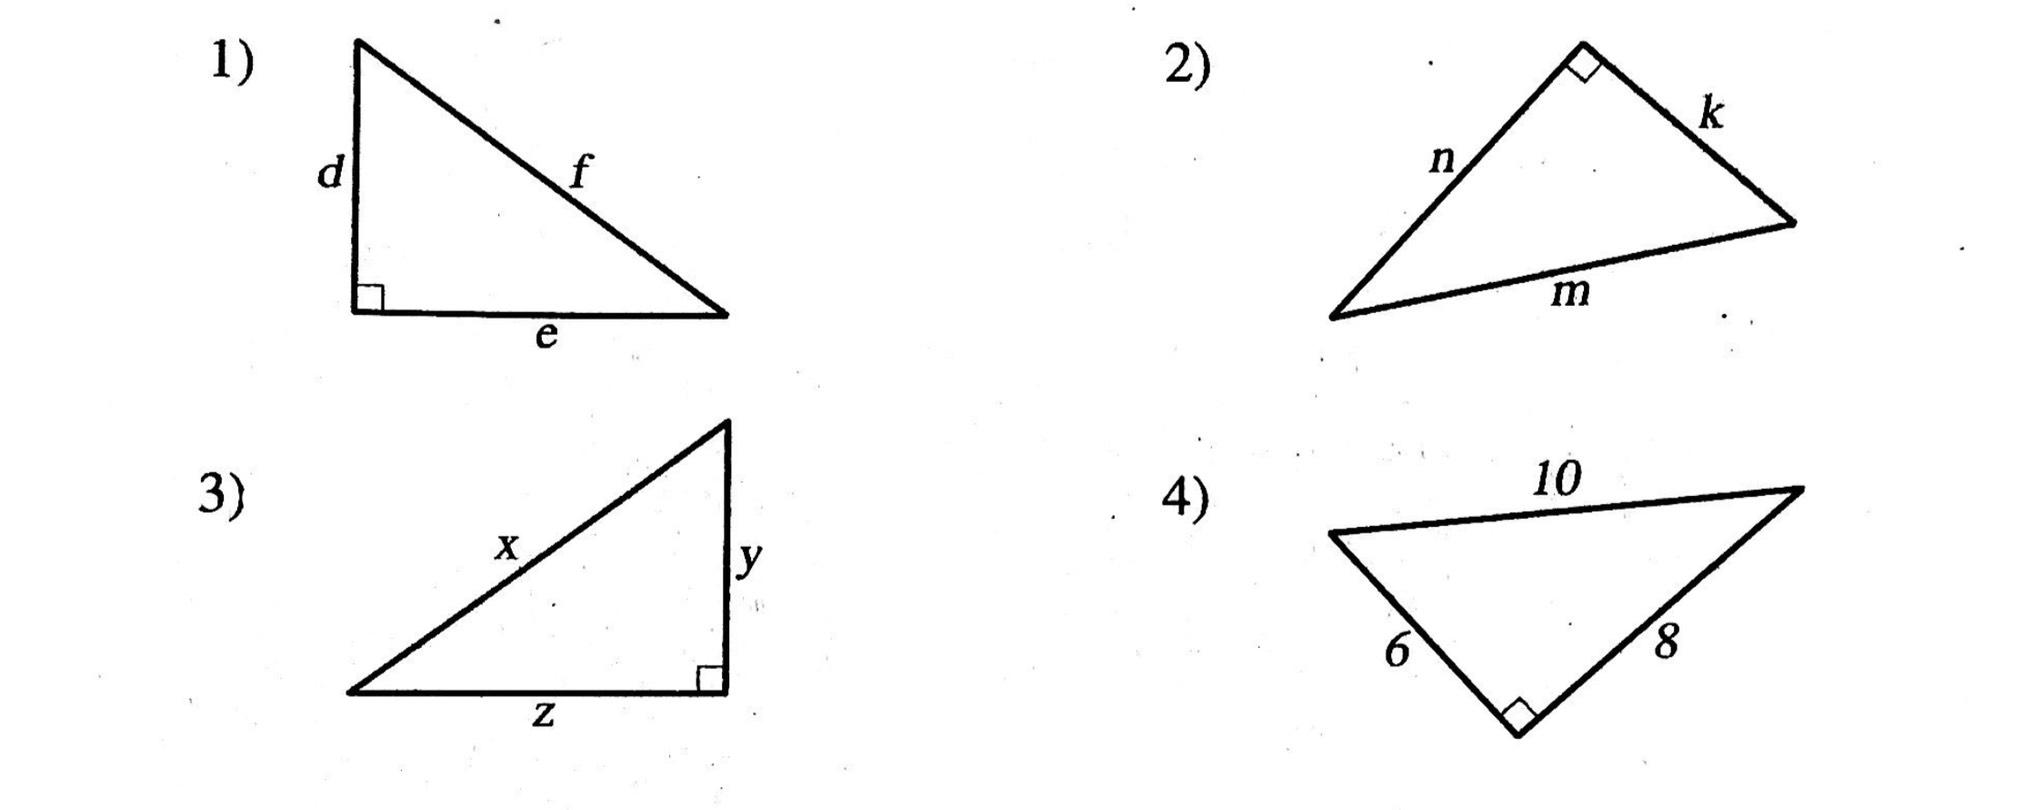 ตัวอย่างสามเหลี่ยมมุมฉาก